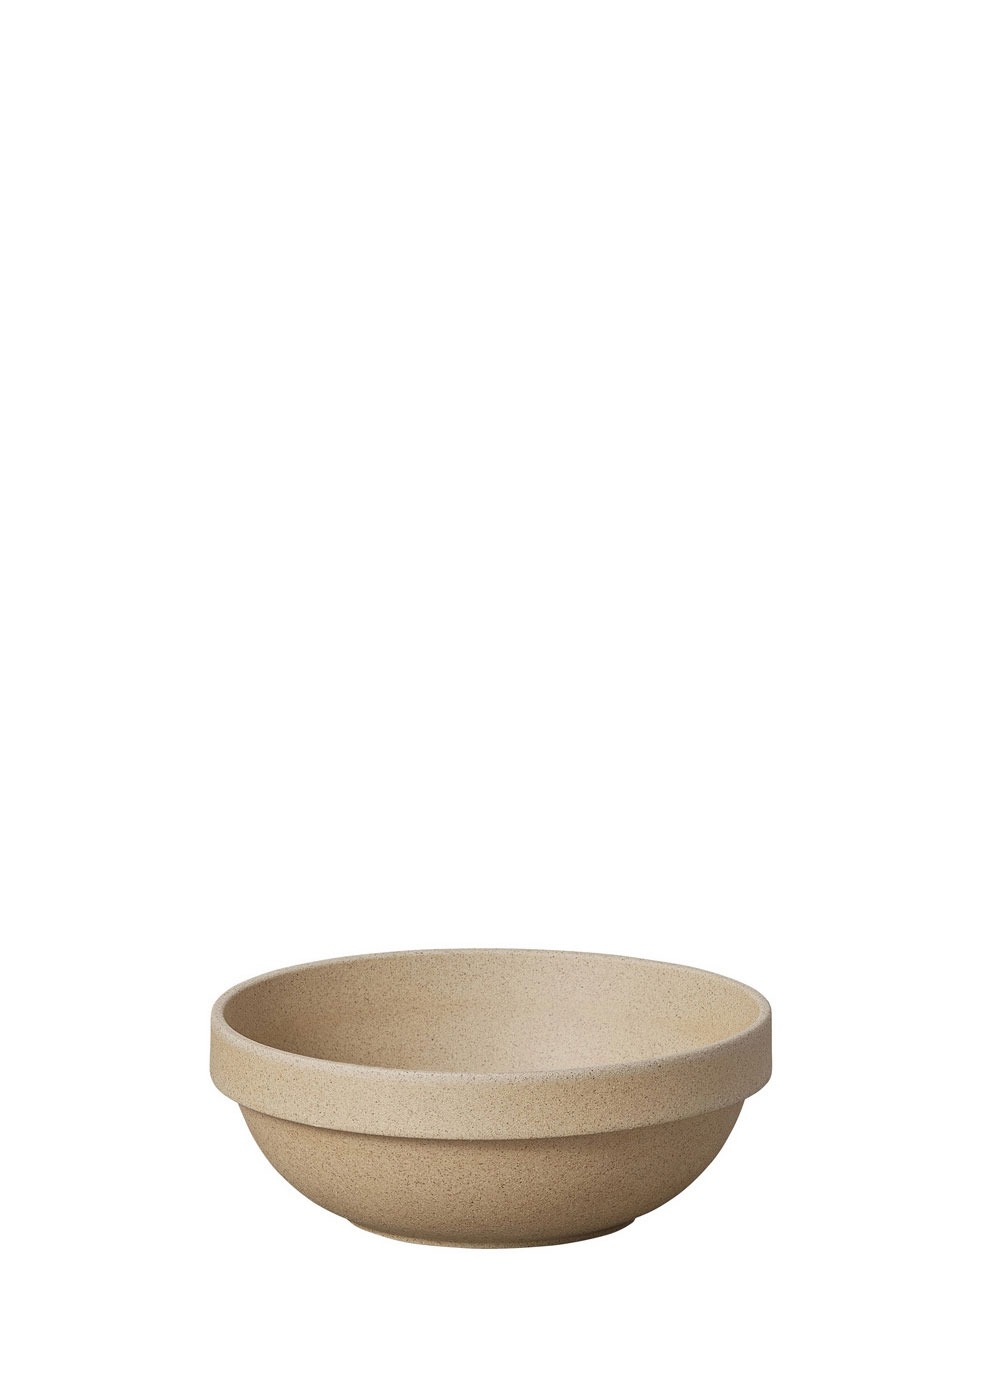 Medium Round Bowl